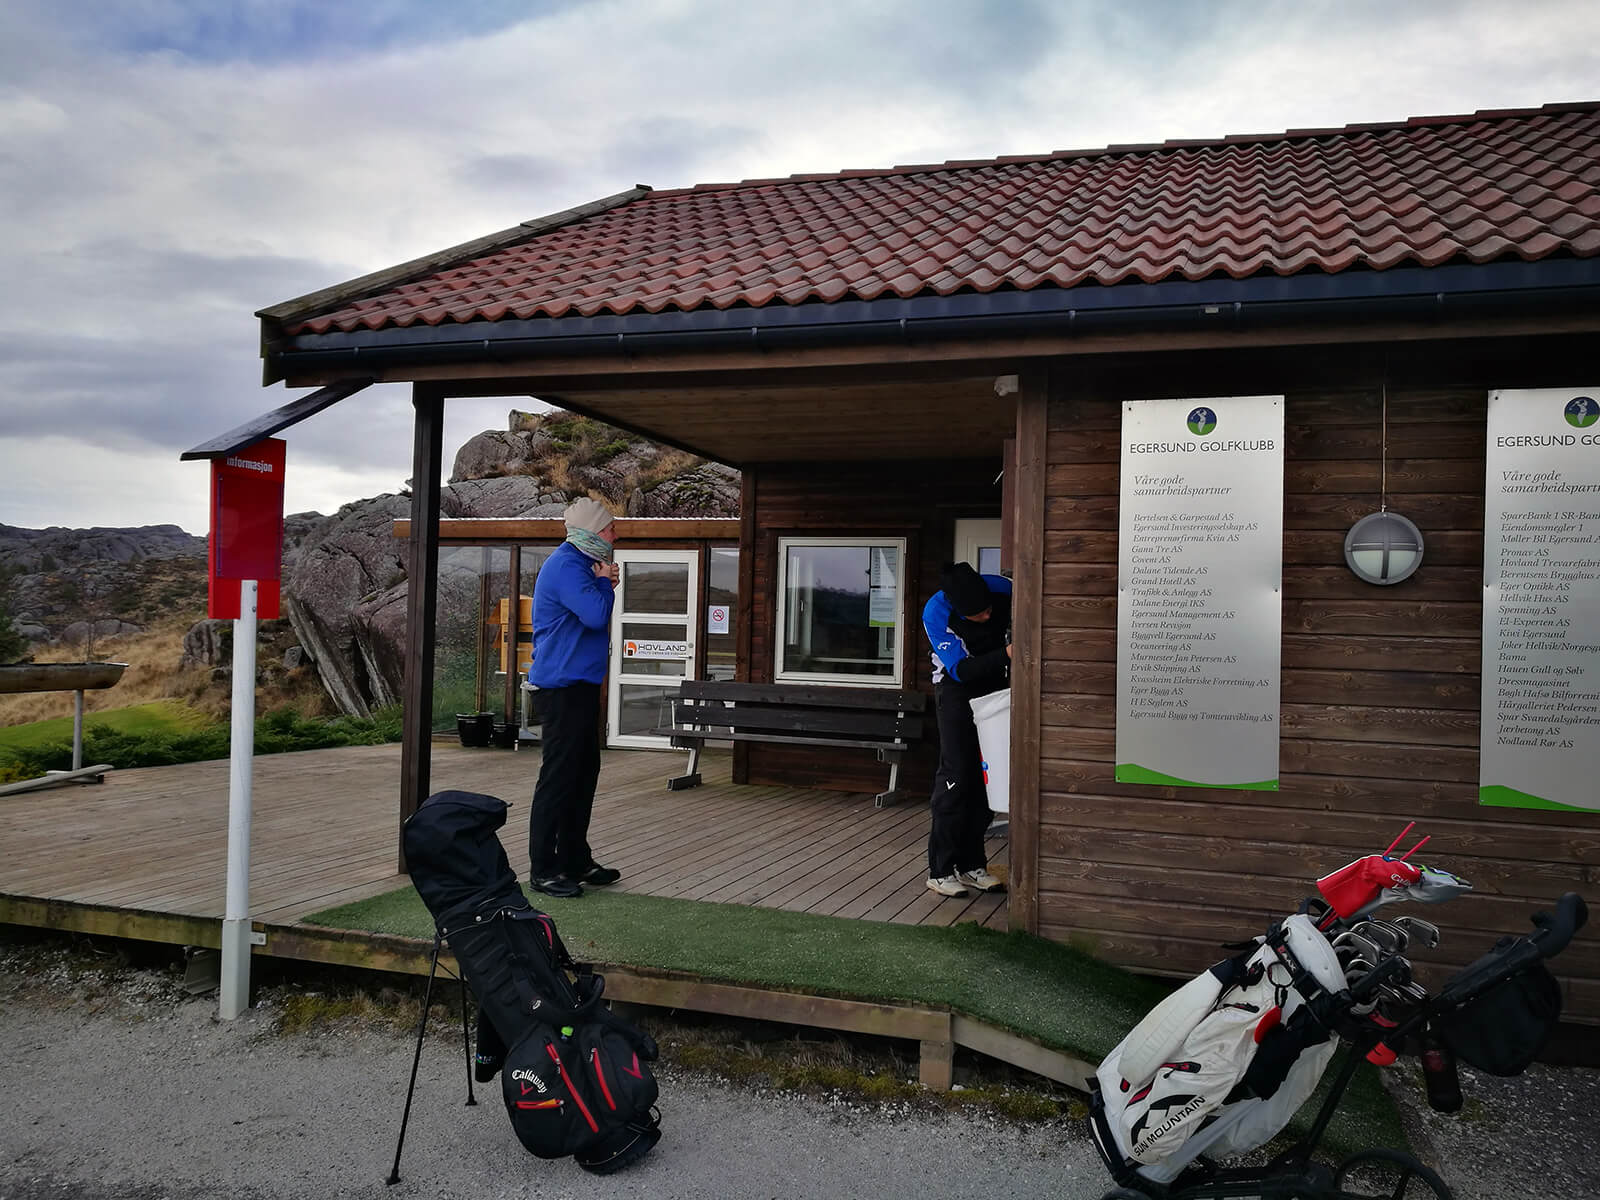 Klubbhuset til Egersung golfklubb med kiosk og en liten proshop